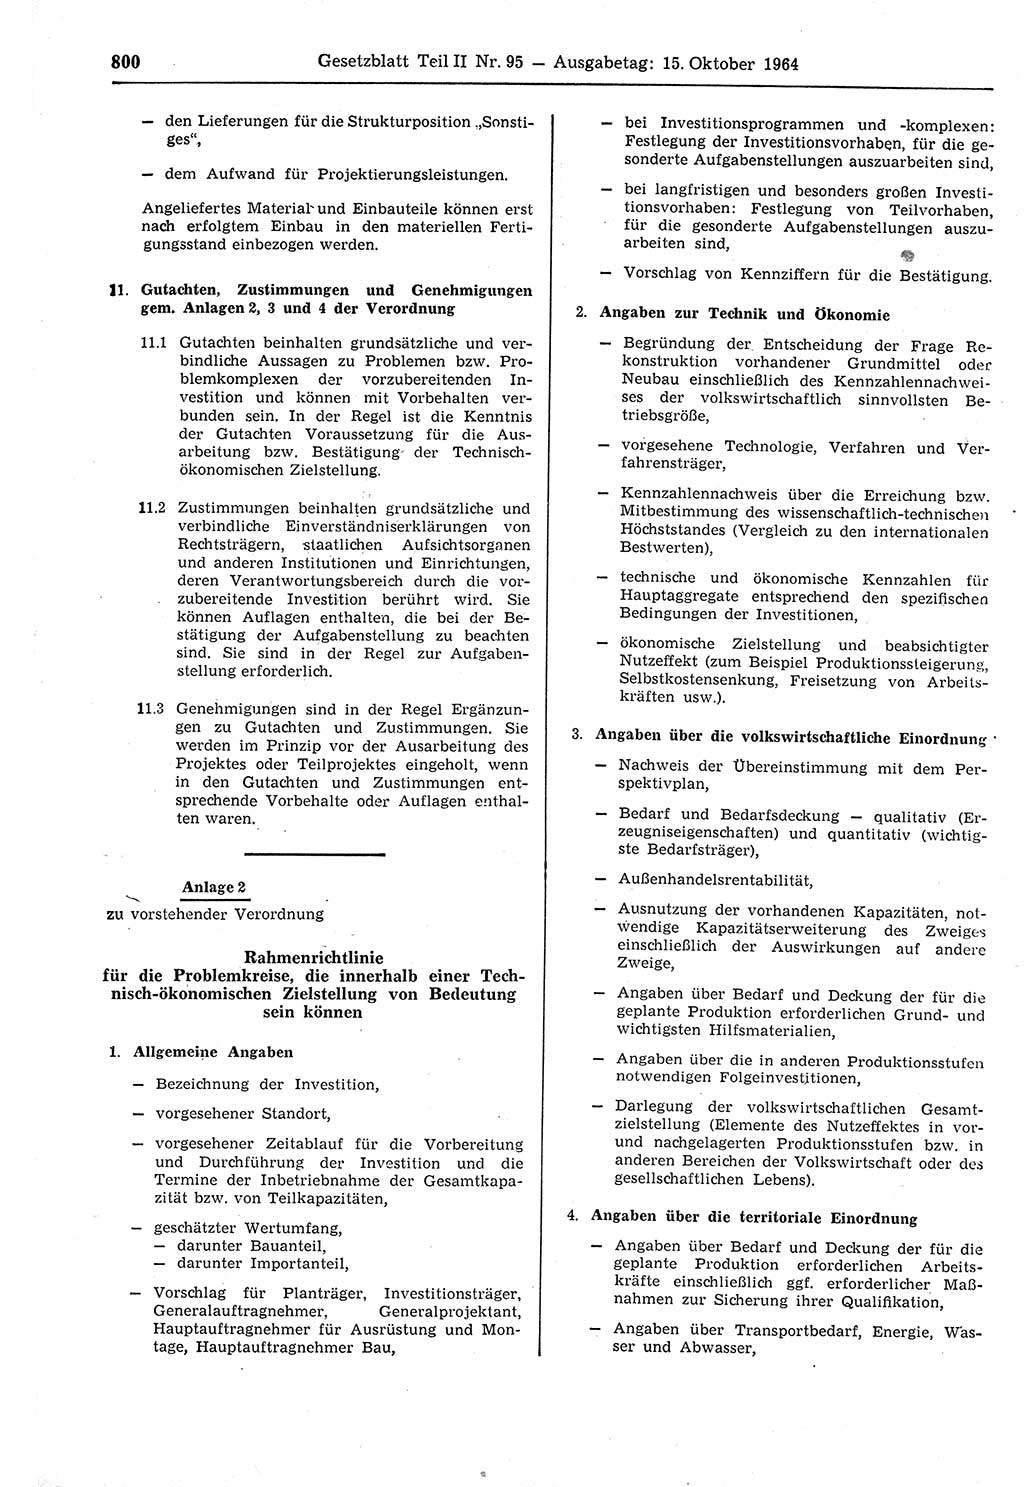 Gesetzblatt (GBl.) der Deutschen Demokratischen Republik (DDR) Teil ⅠⅠ 1964, Seite 800 (GBl. DDR ⅠⅠ 1964, S. 800)